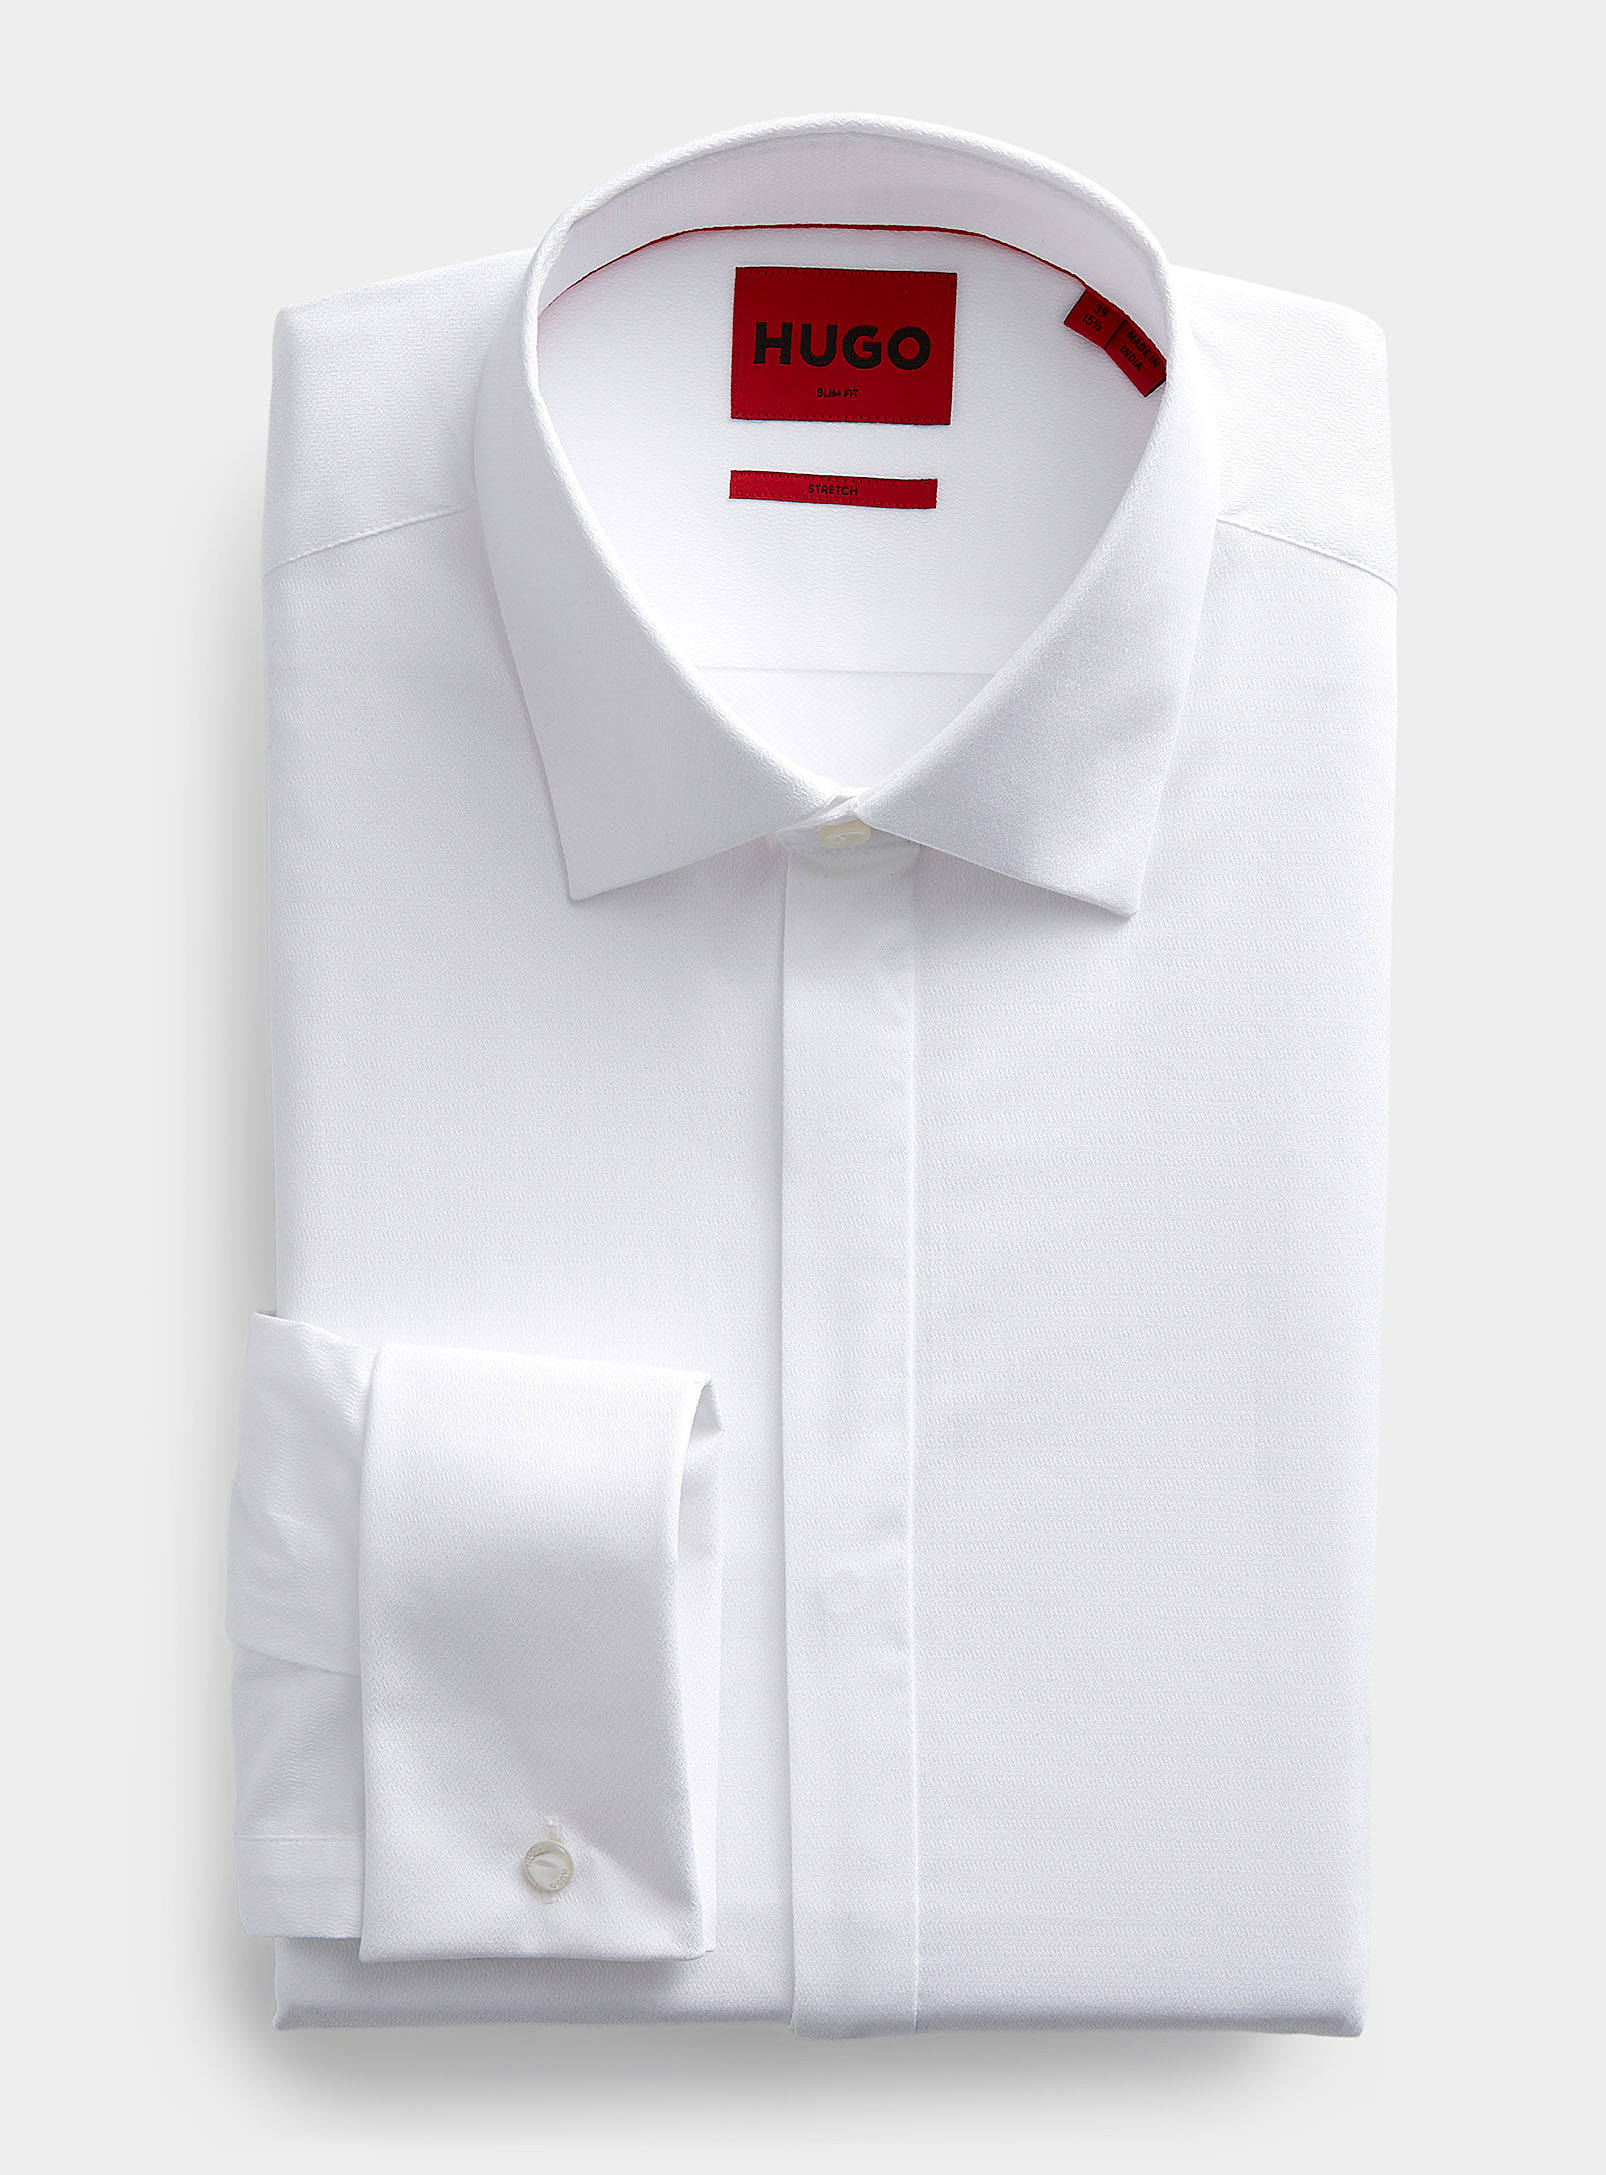 HUGO - La chemise blanche jacquard ton sur Coupe moderne